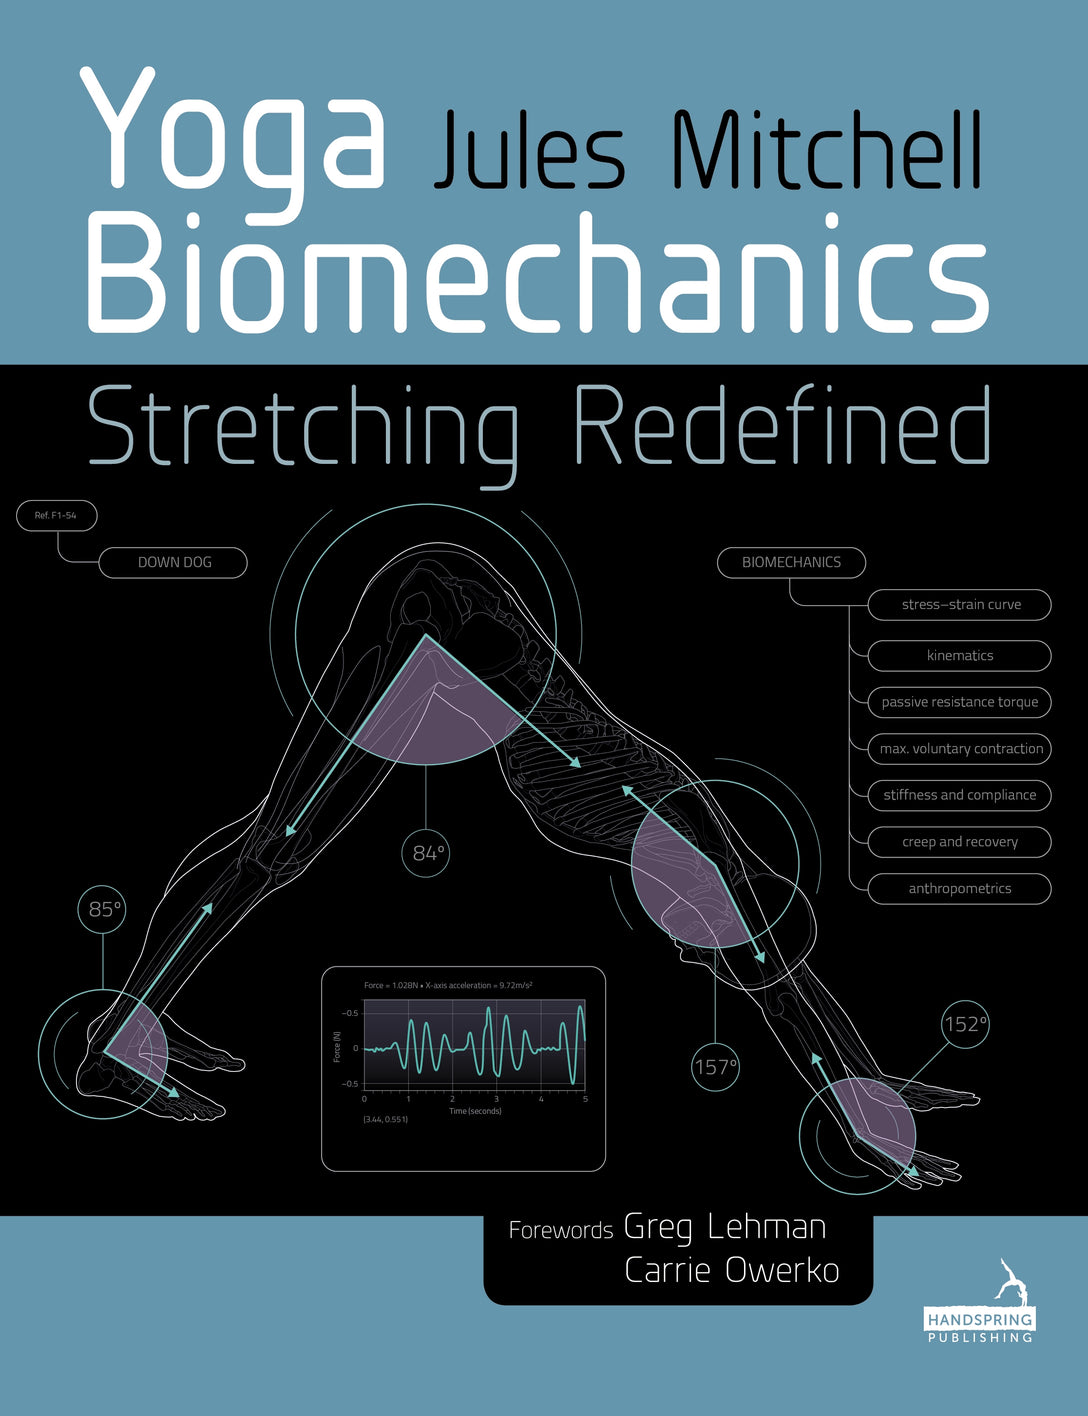 Yoga Biomechanics by Jules Mitchell